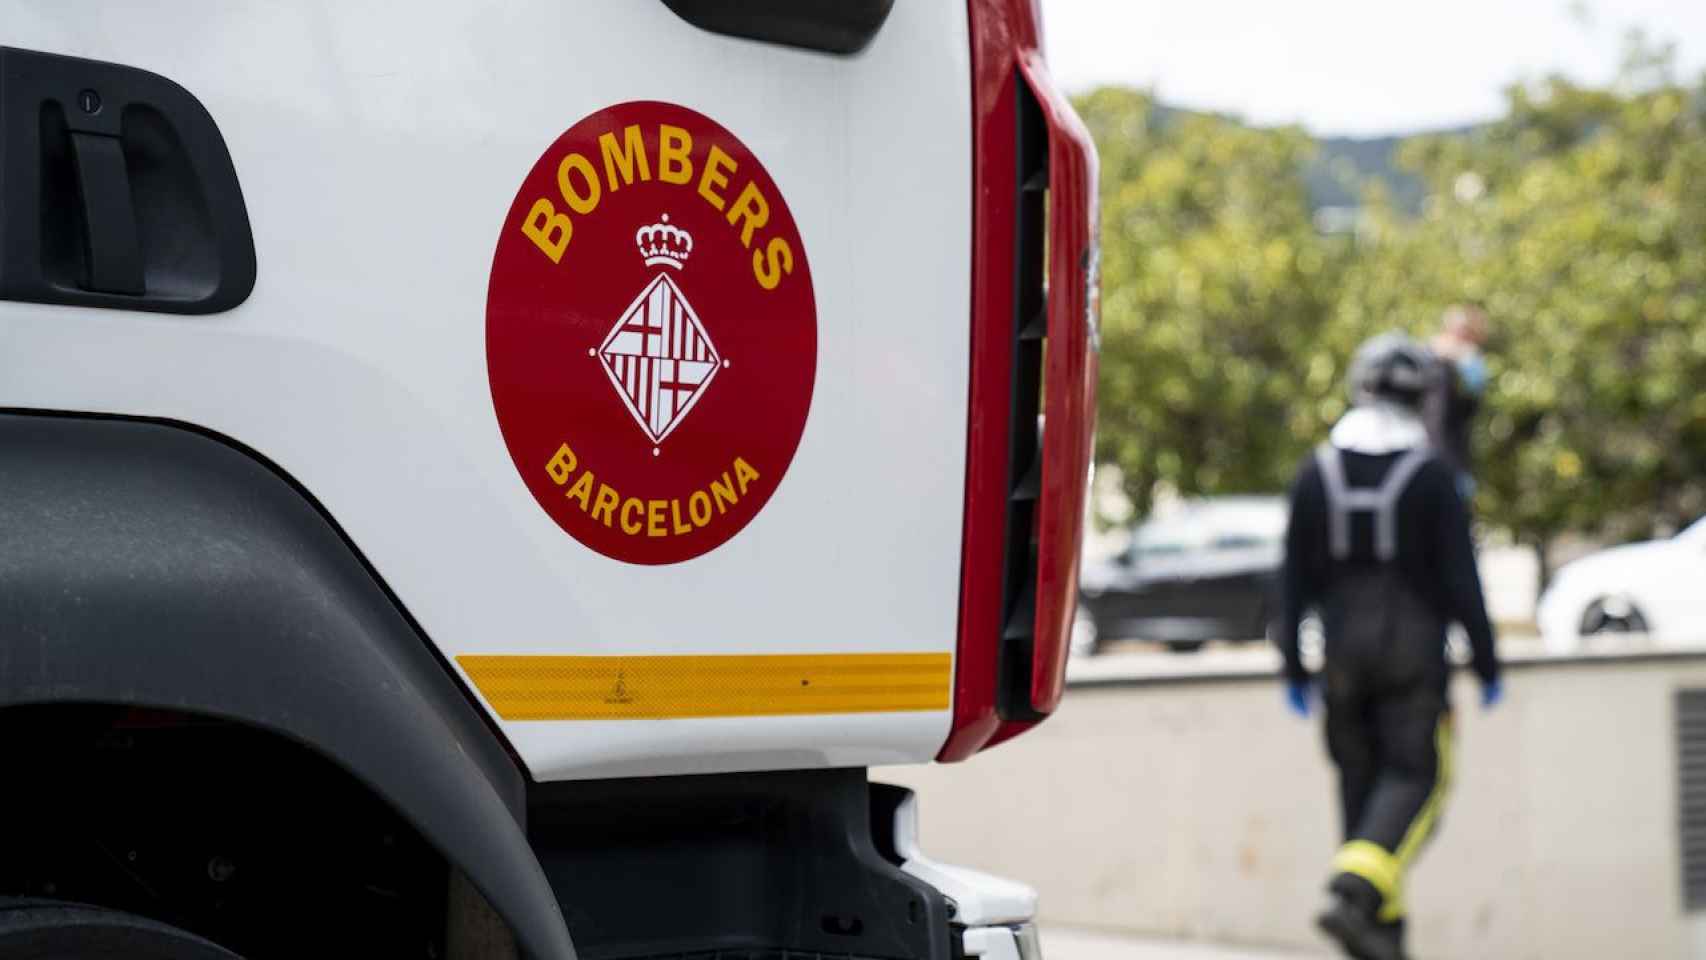 Bomberos de Barcelona, en un accidente / TWITTER BOMBERS